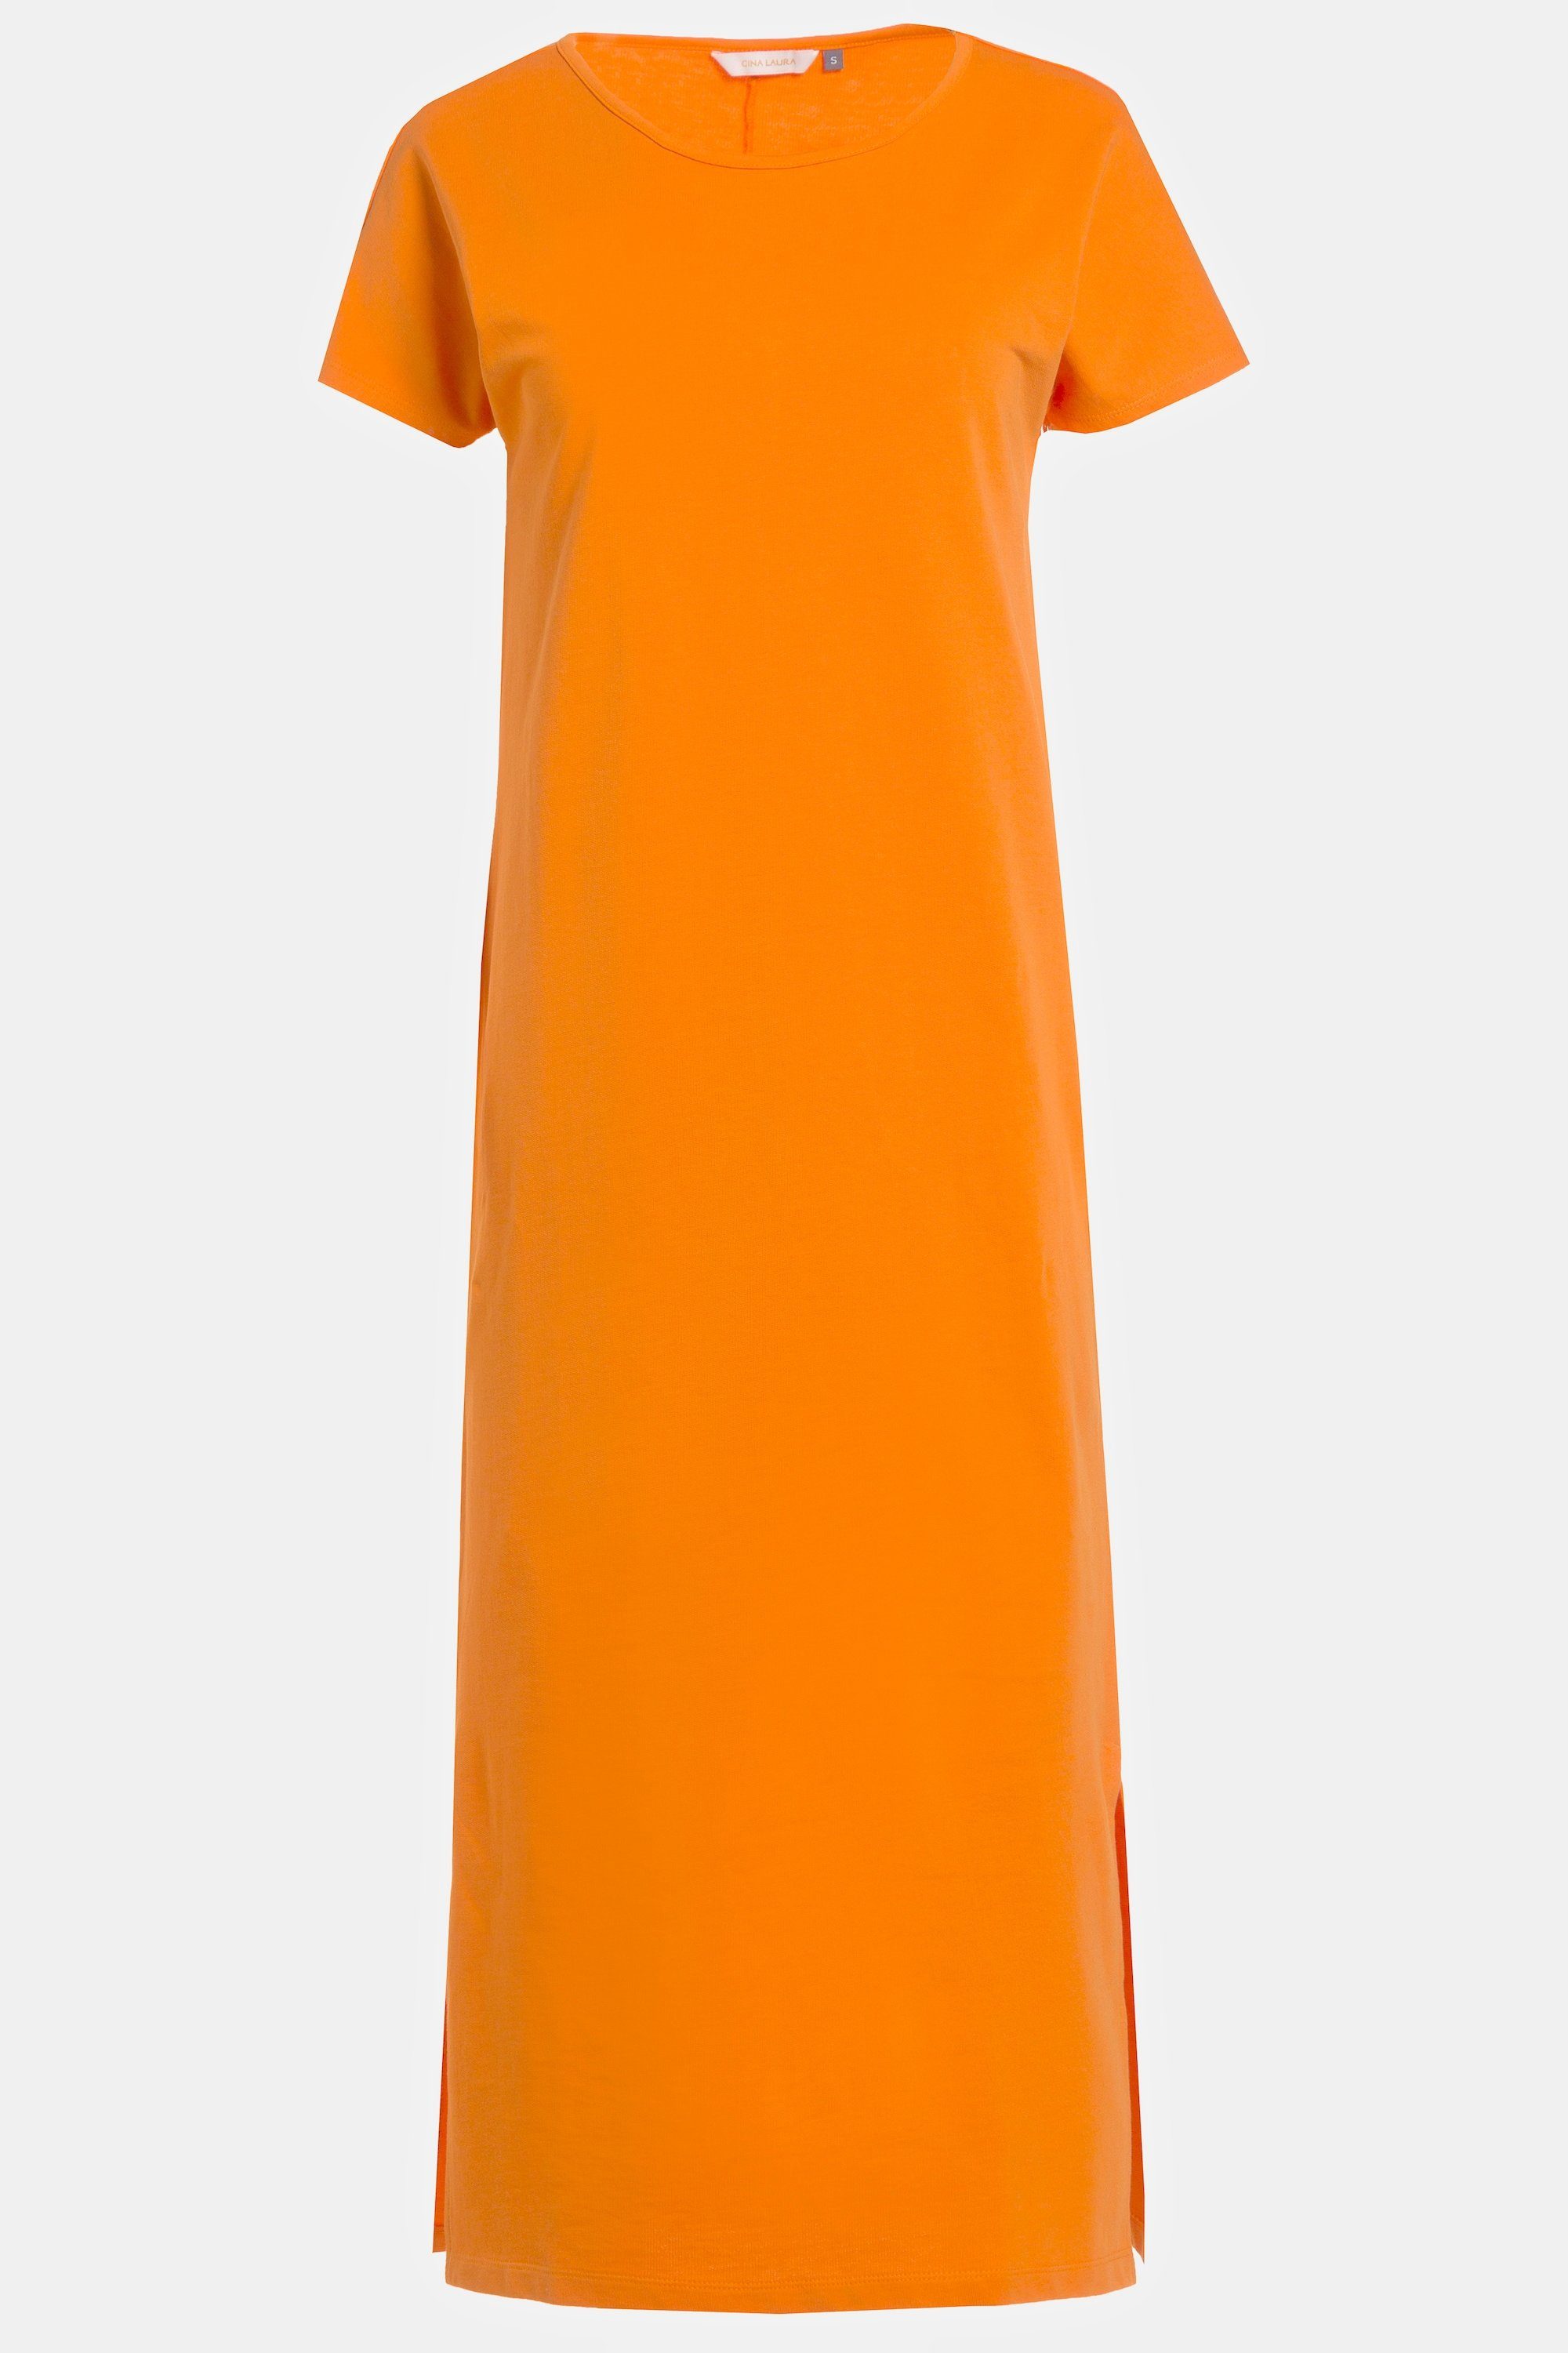 Jersey Gina Seitenschlitze Laura ärmellos Rundhals Jerseykleid Kleid orange